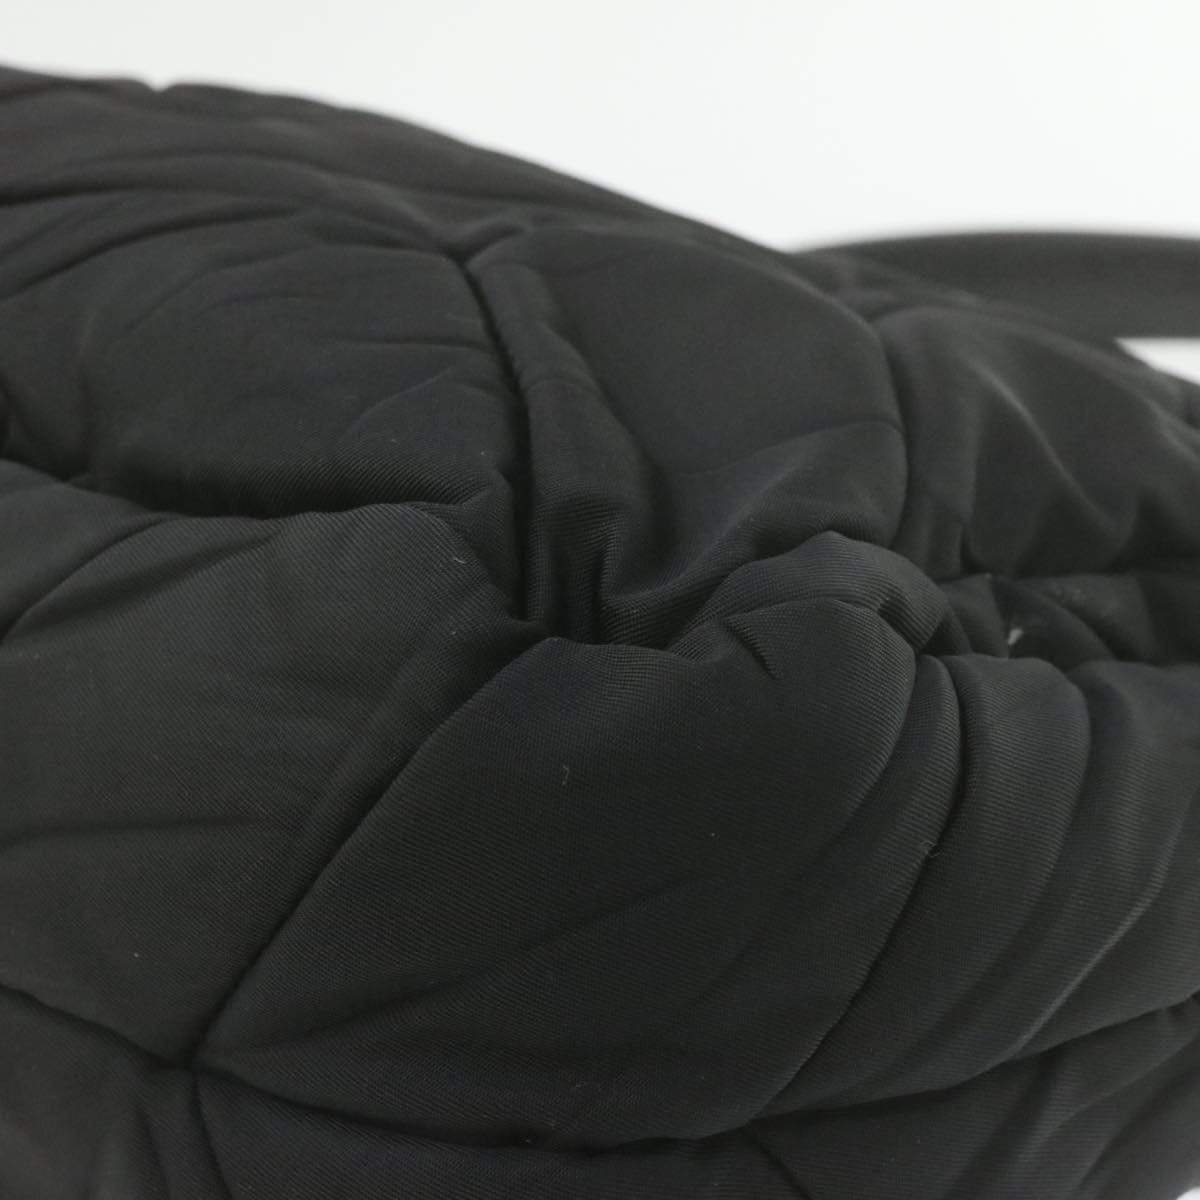 Prada Prada Black Tessuto Quilted Shoulder Bag MW2267